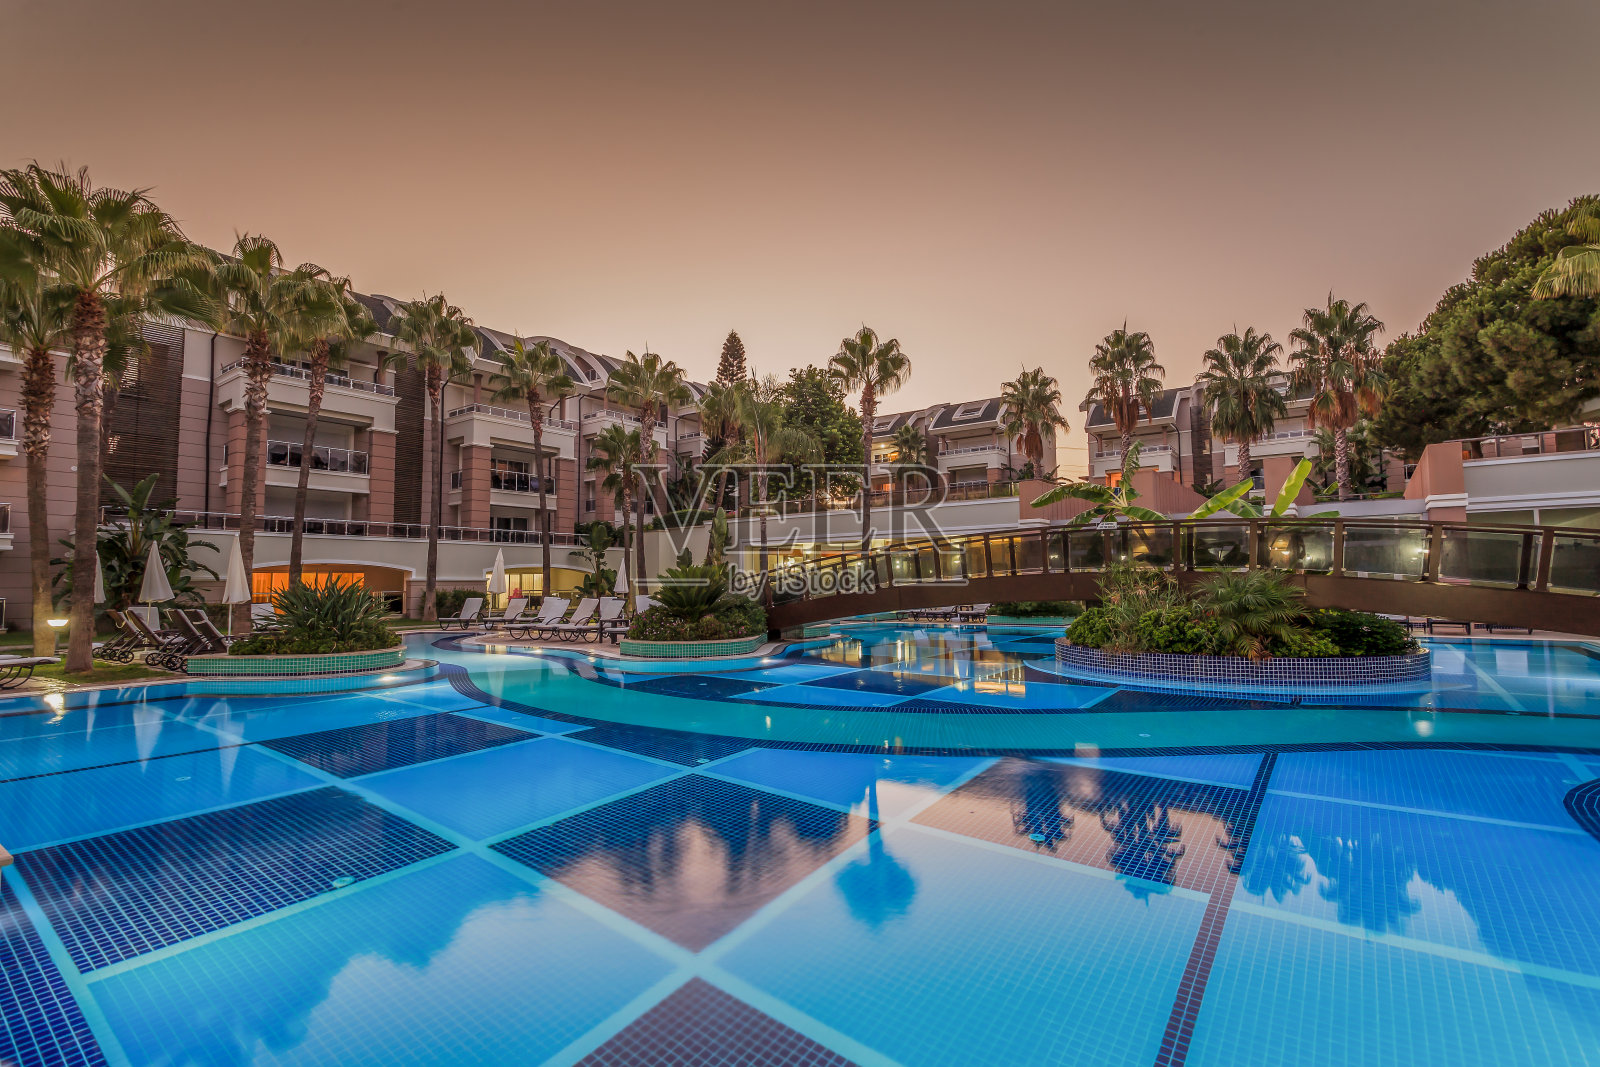 豪华建筑酒店游泳池照片摄影图片